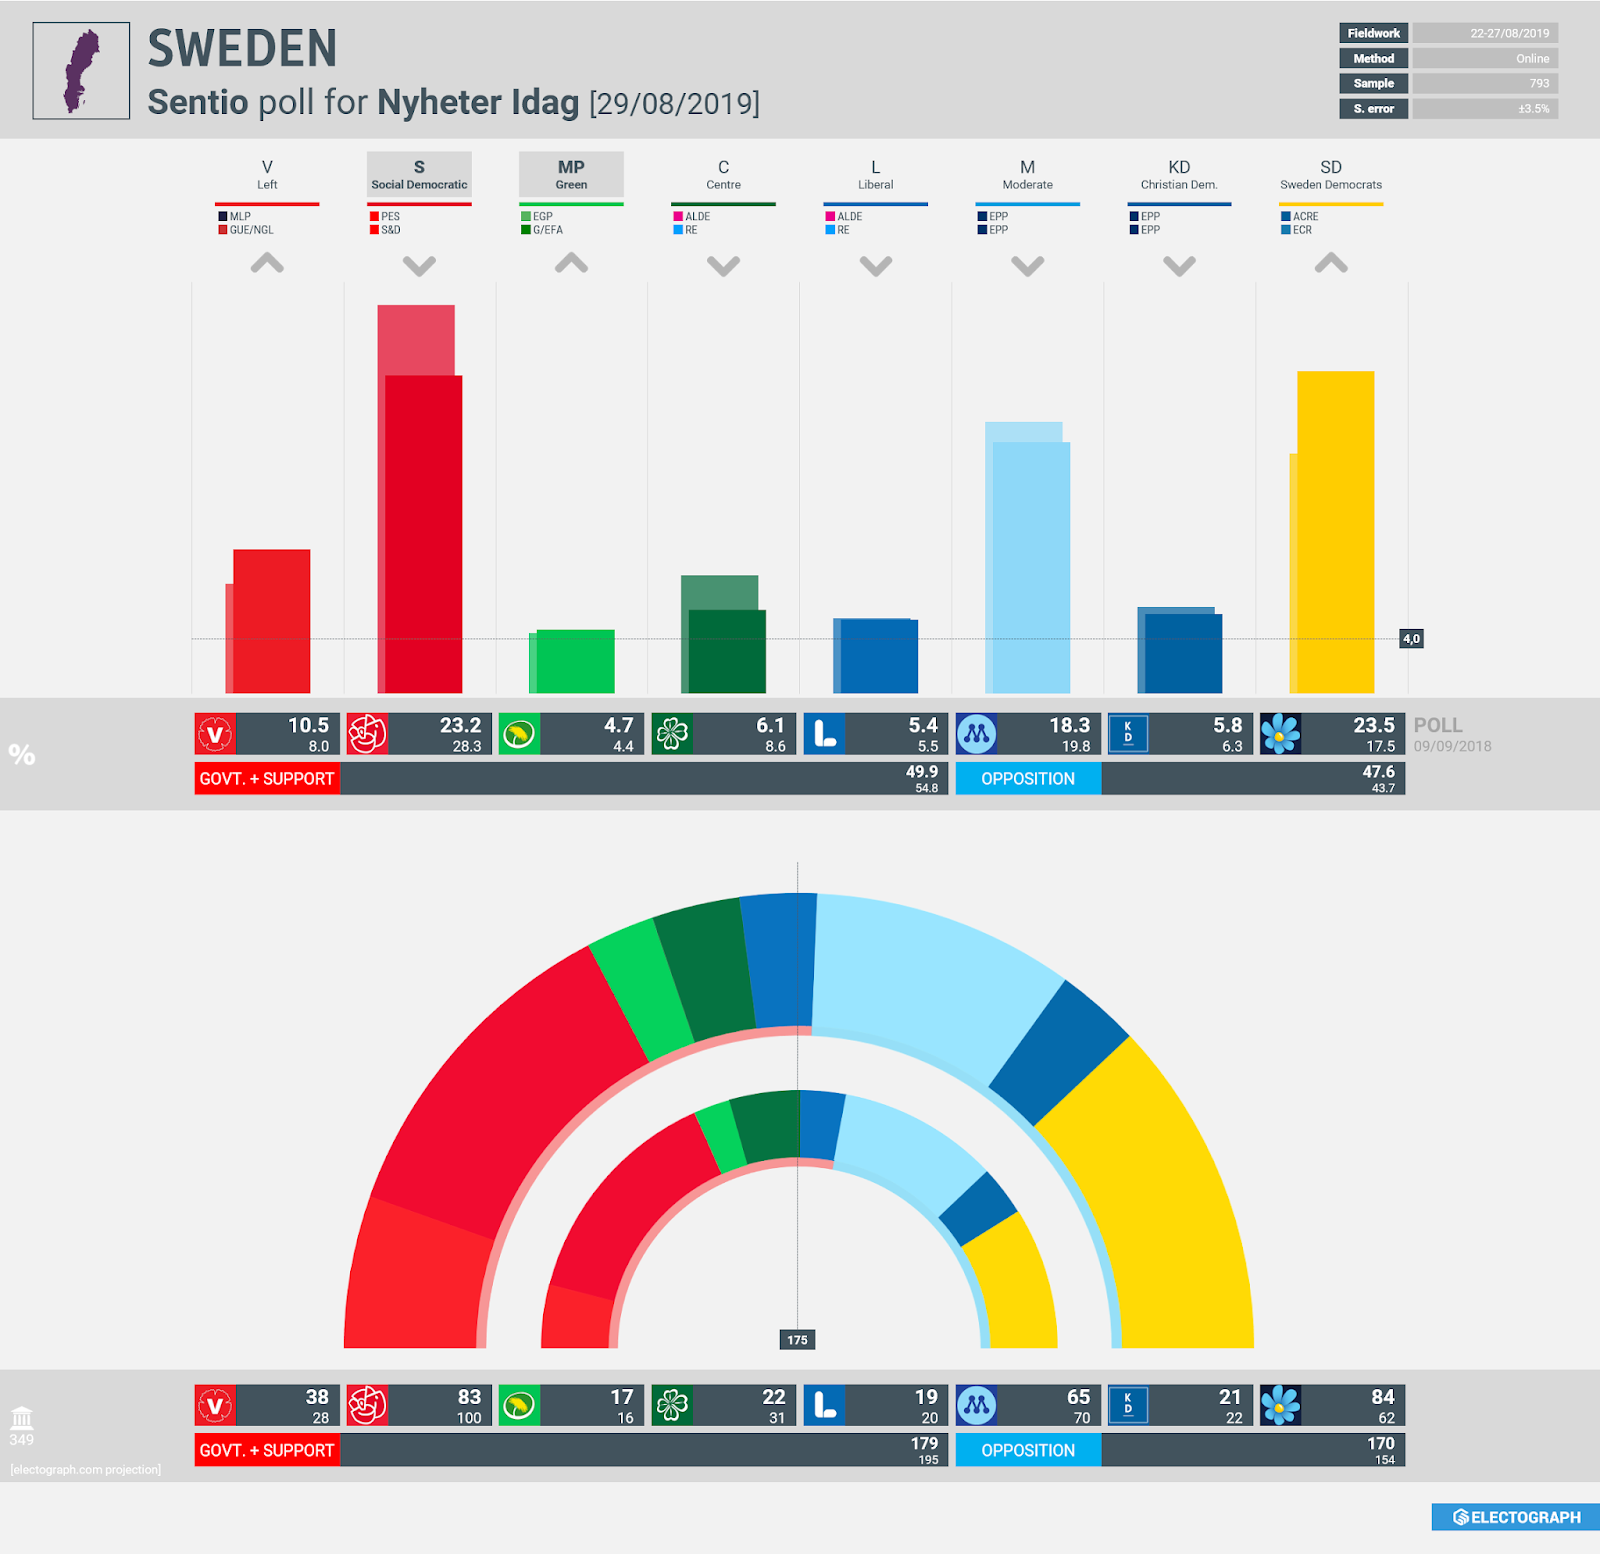 SWEDEN: Sentio poll chart for Nyheter Idag, 29 August 2019